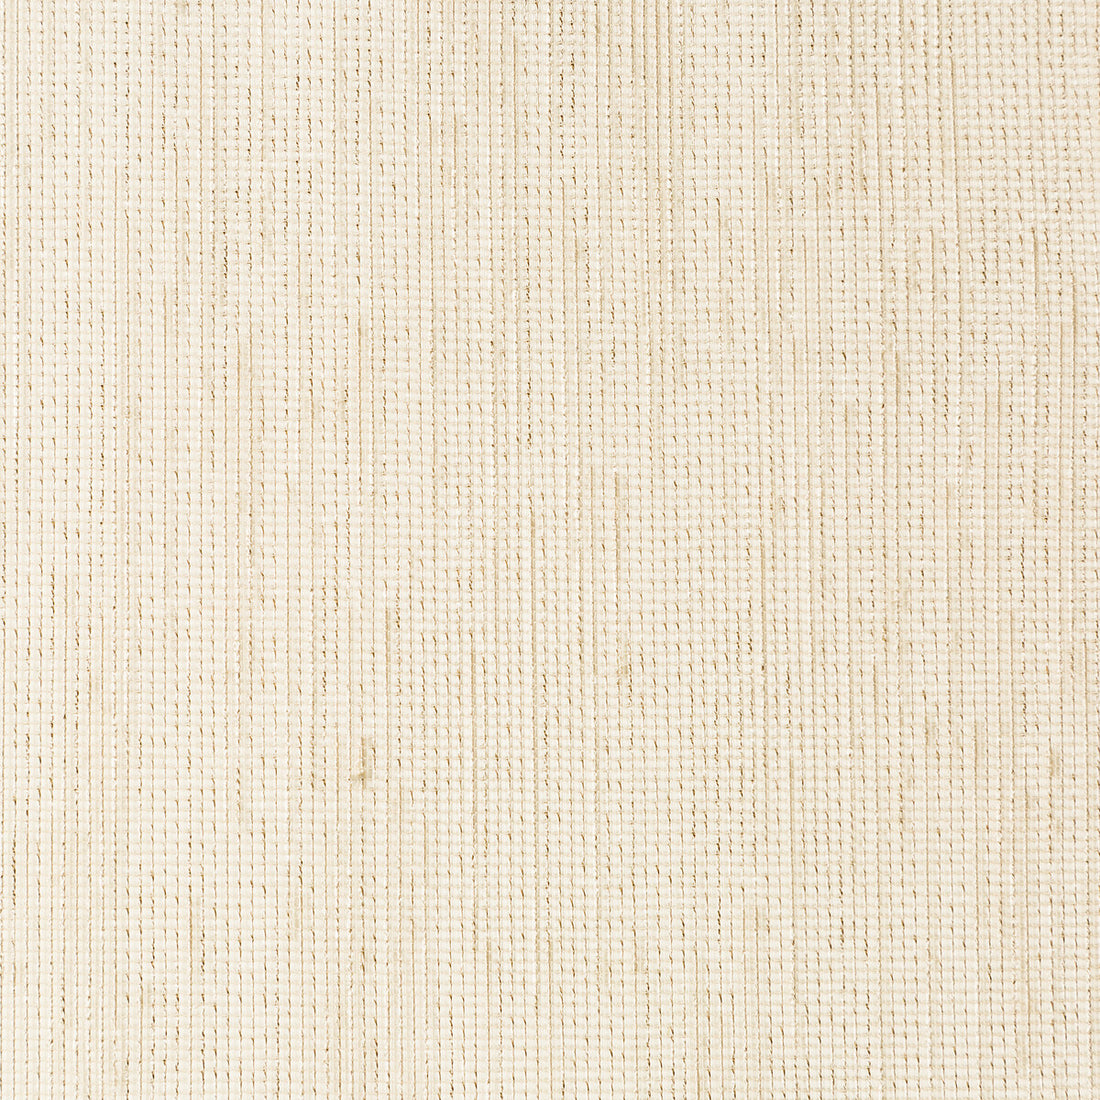 Kravet Basics fabric in 4767-16 color - pattern 4767.16.0 - by Kravet Basics